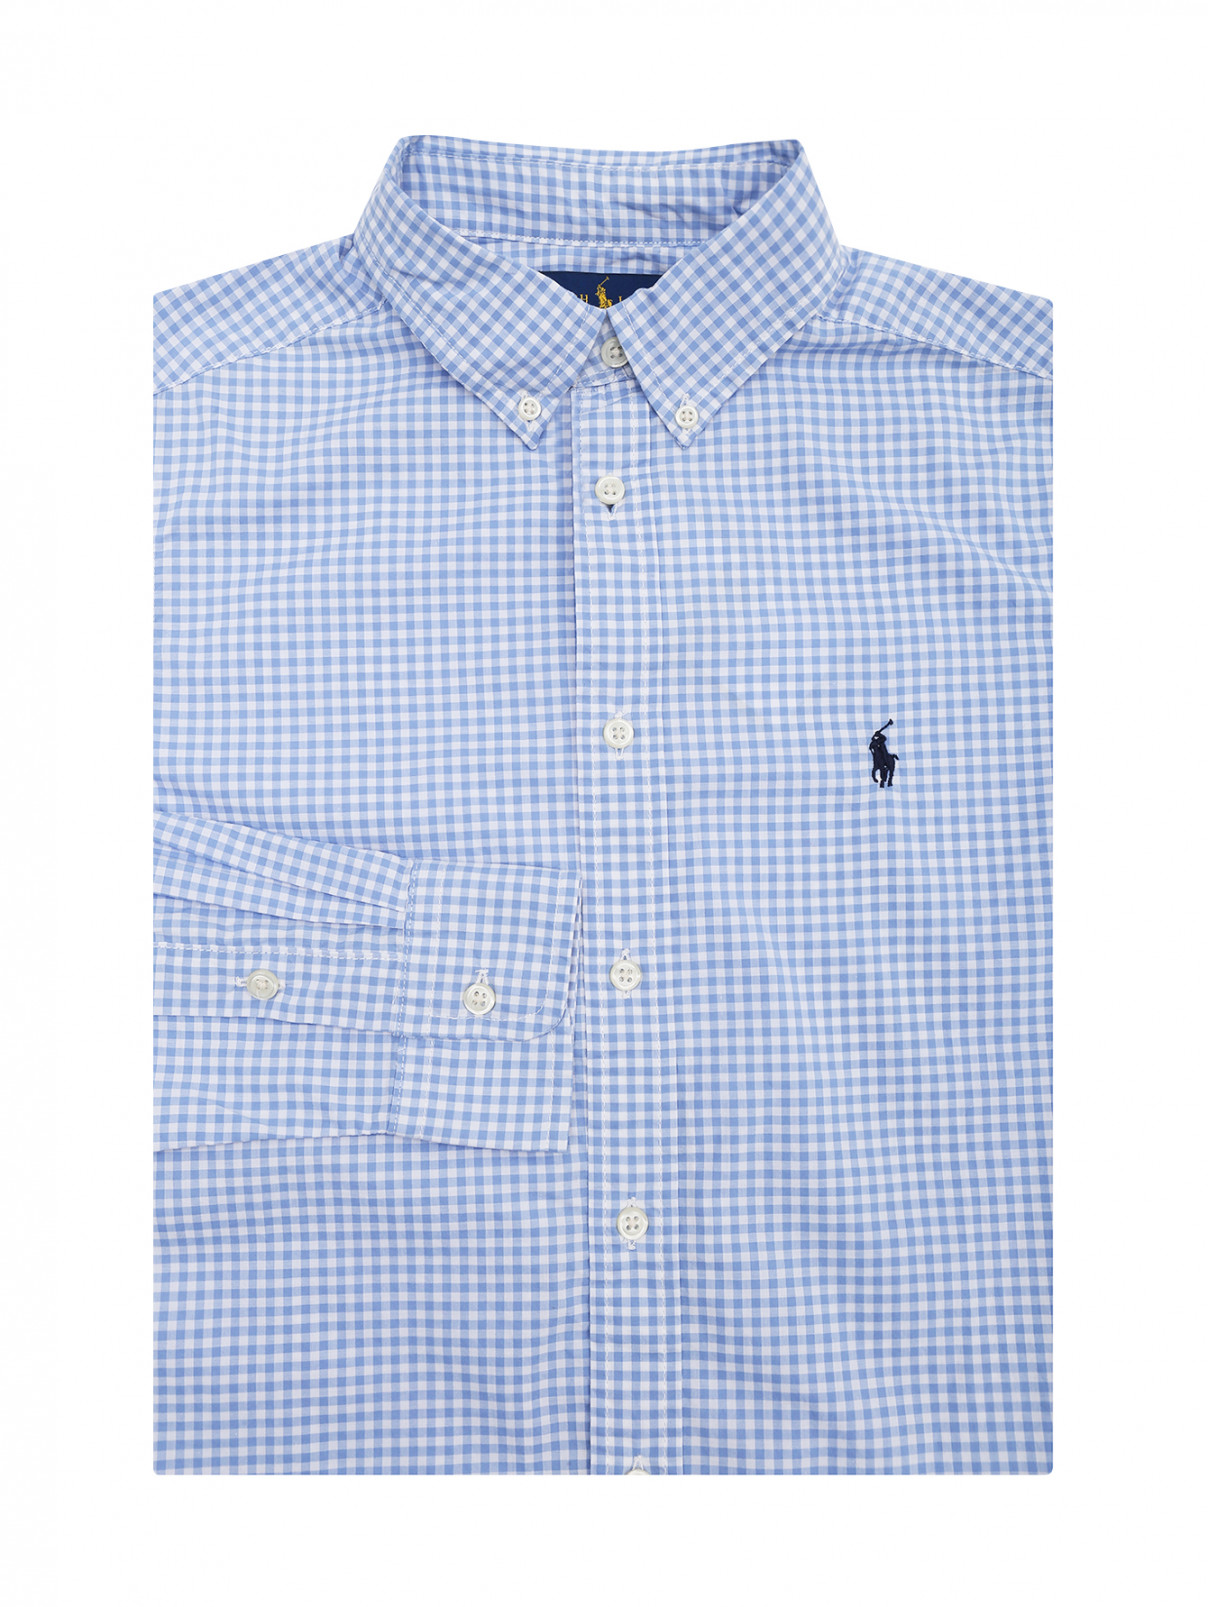 Рубашка из хлопка в клетку Ralph Lauren  –  Общий вид  – Цвет:  Синий